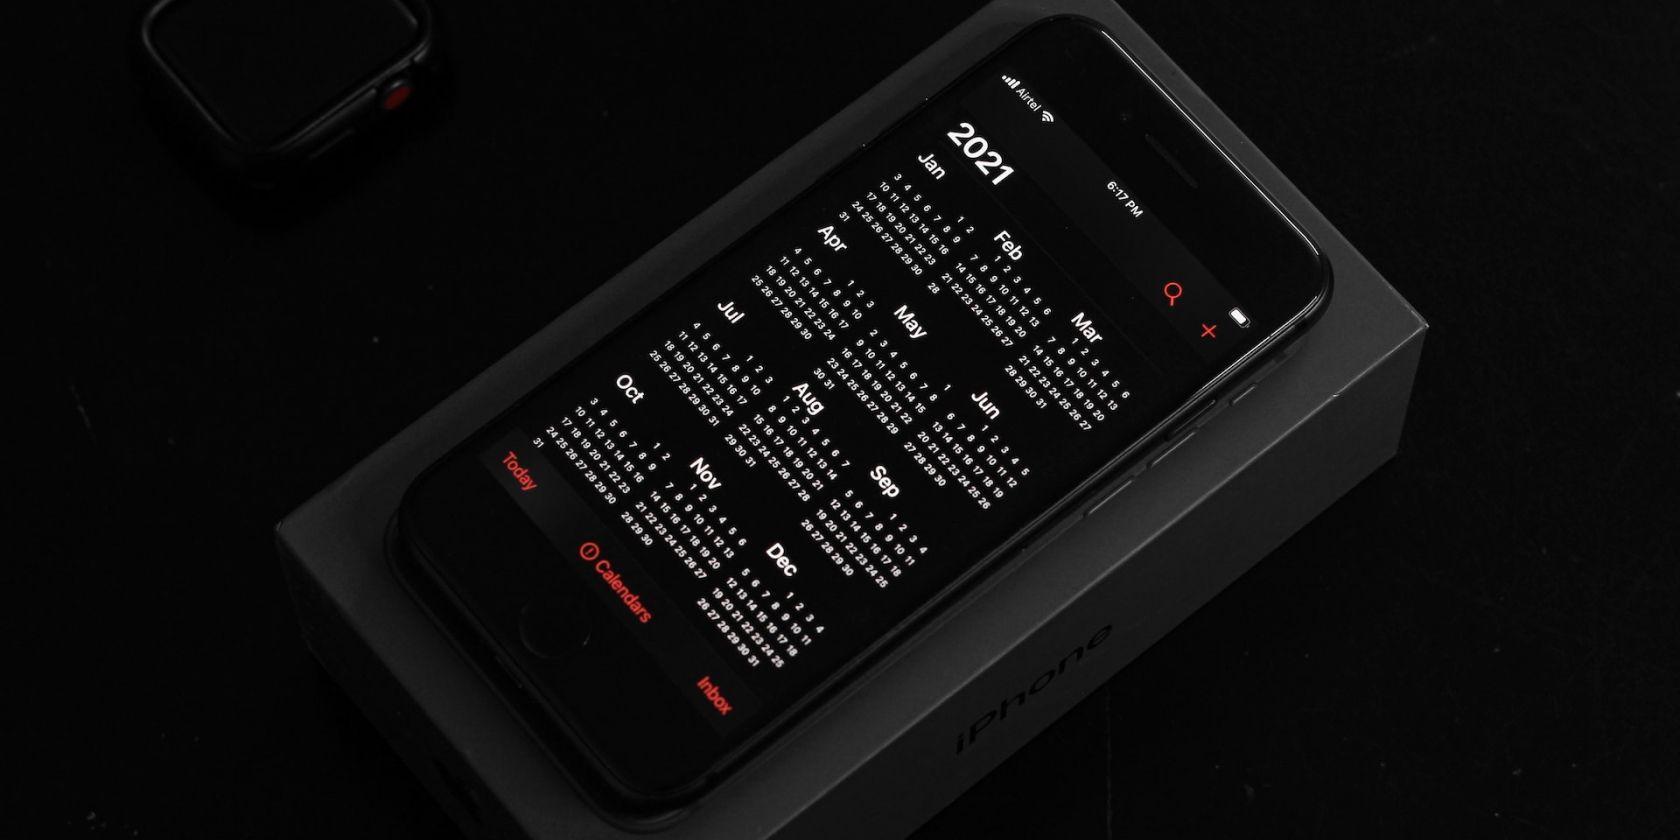 Calendar app running on an iPhone